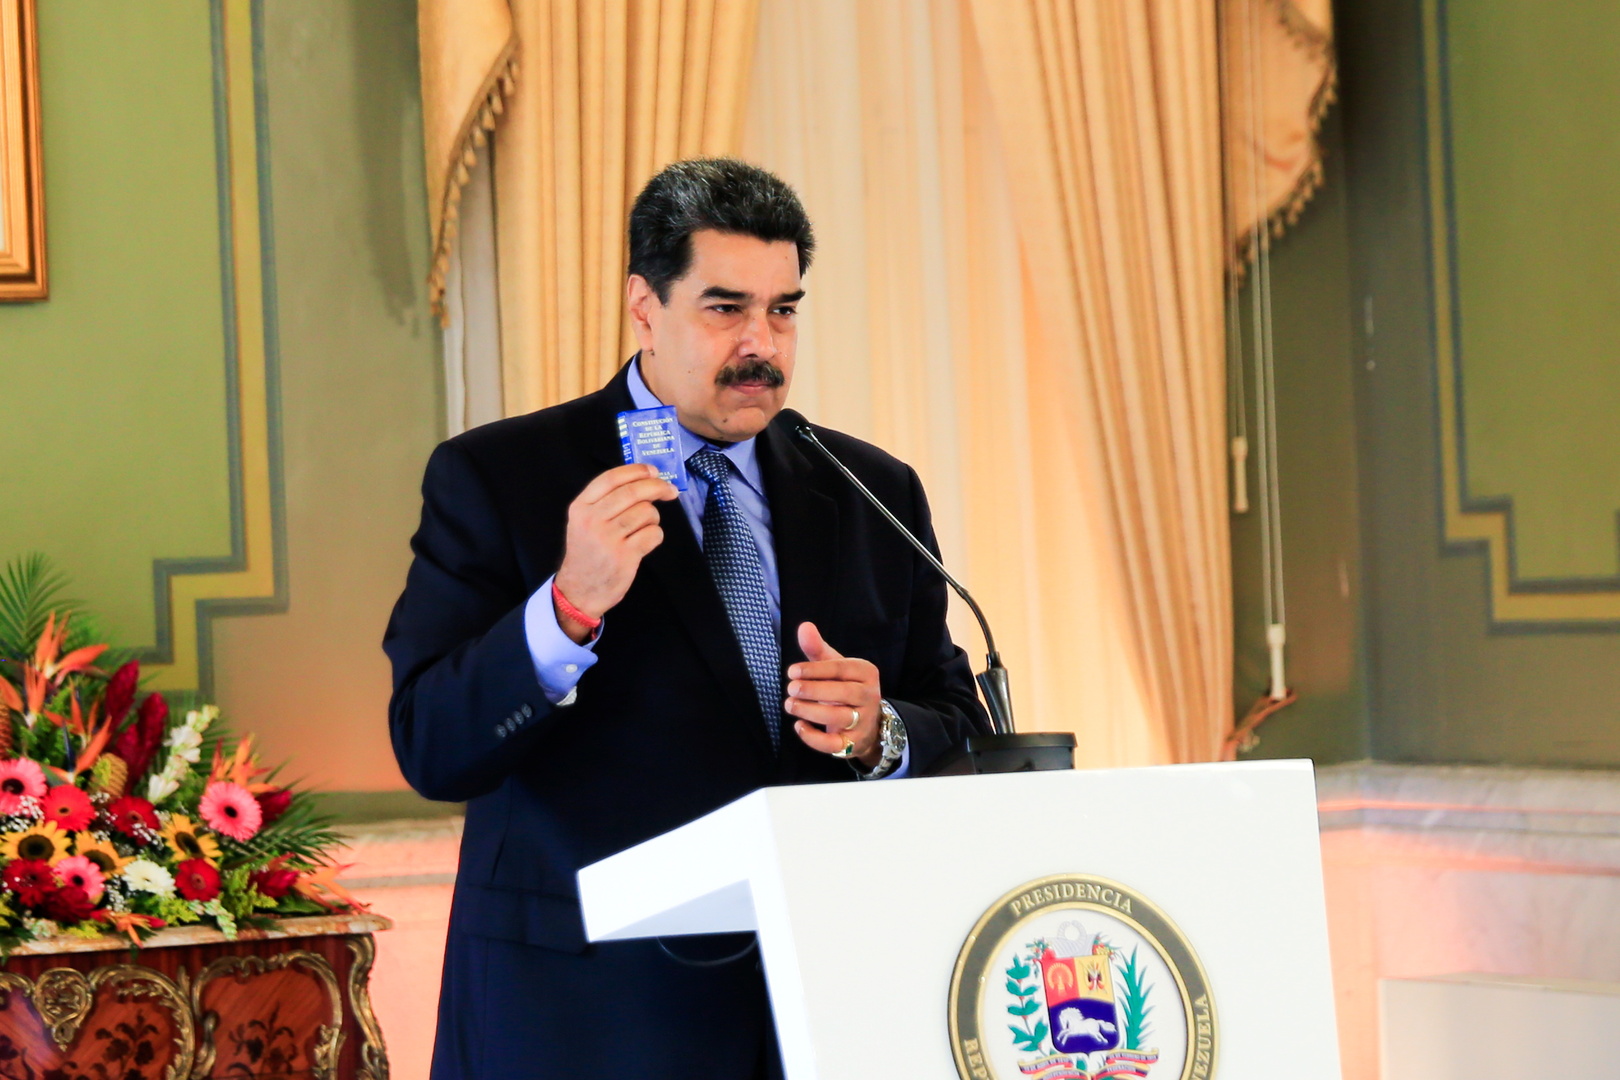 مادورو: سأترك الرئاسة في حال فازت المعارضة بالانتخابات التشريعية